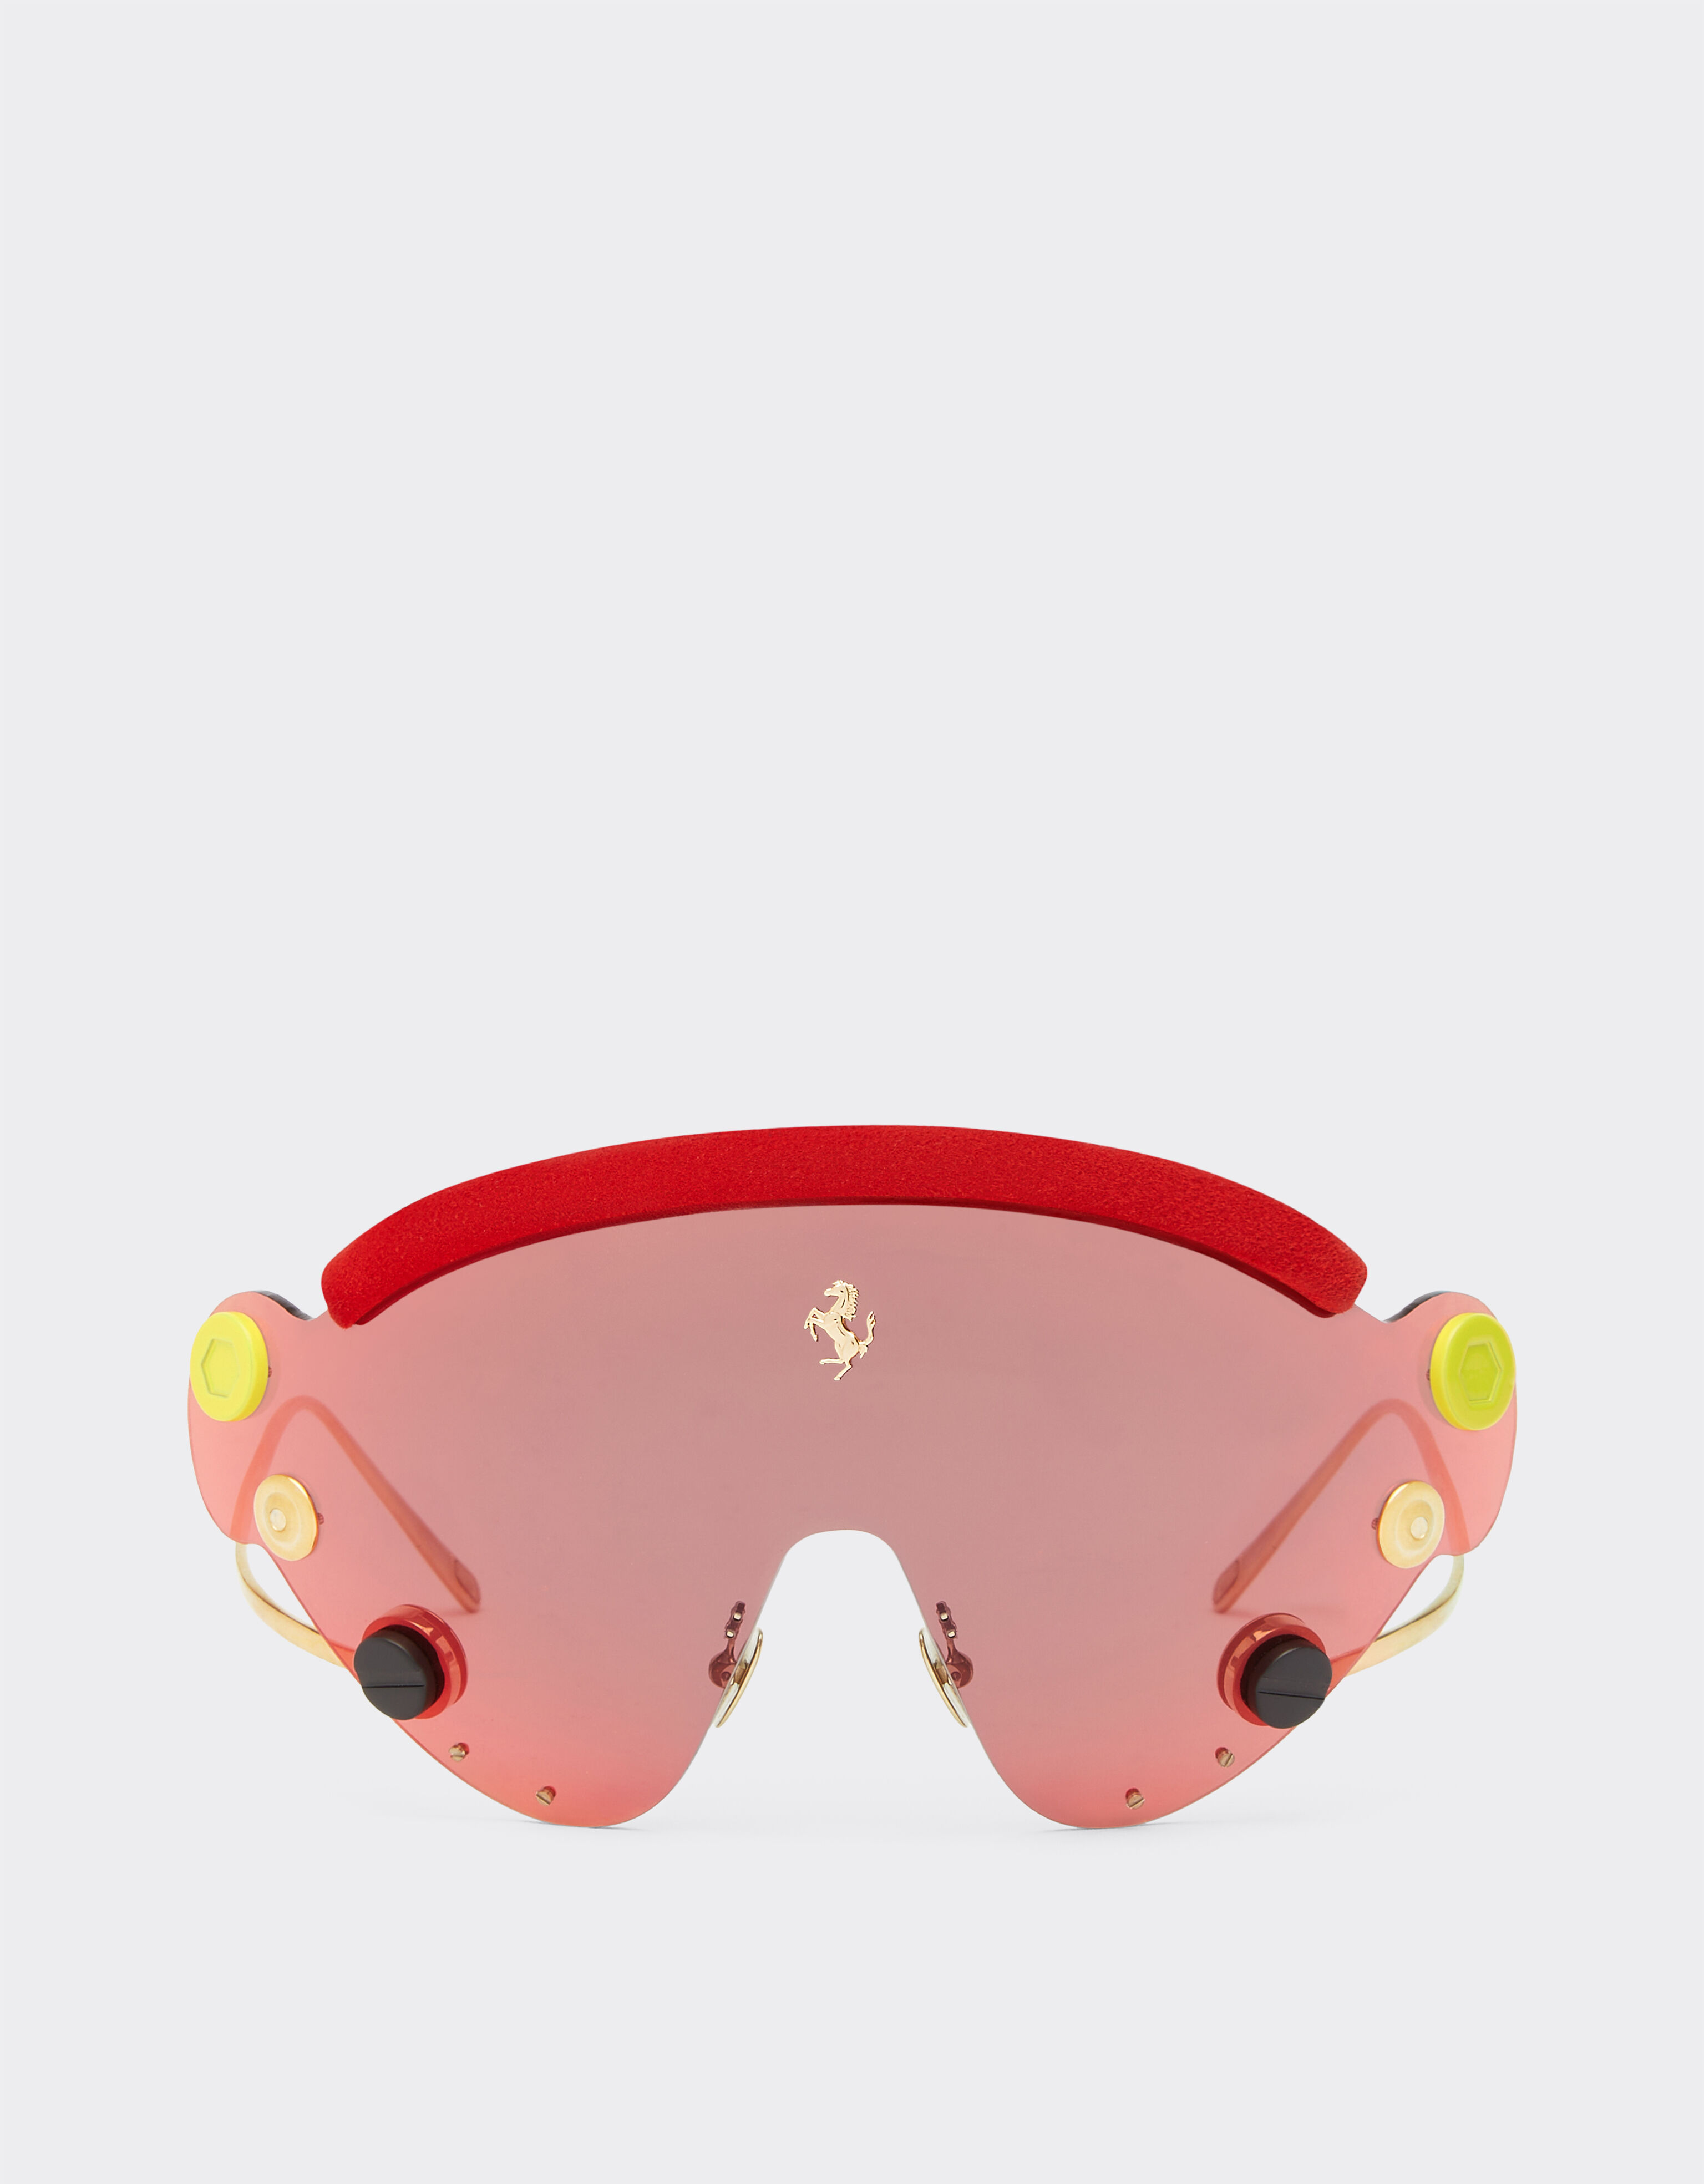 Ferrari Gafas de sol de Ferrari de edición limitada en metal rojo y dorado con pantalla de espejo roja Negro F1201f